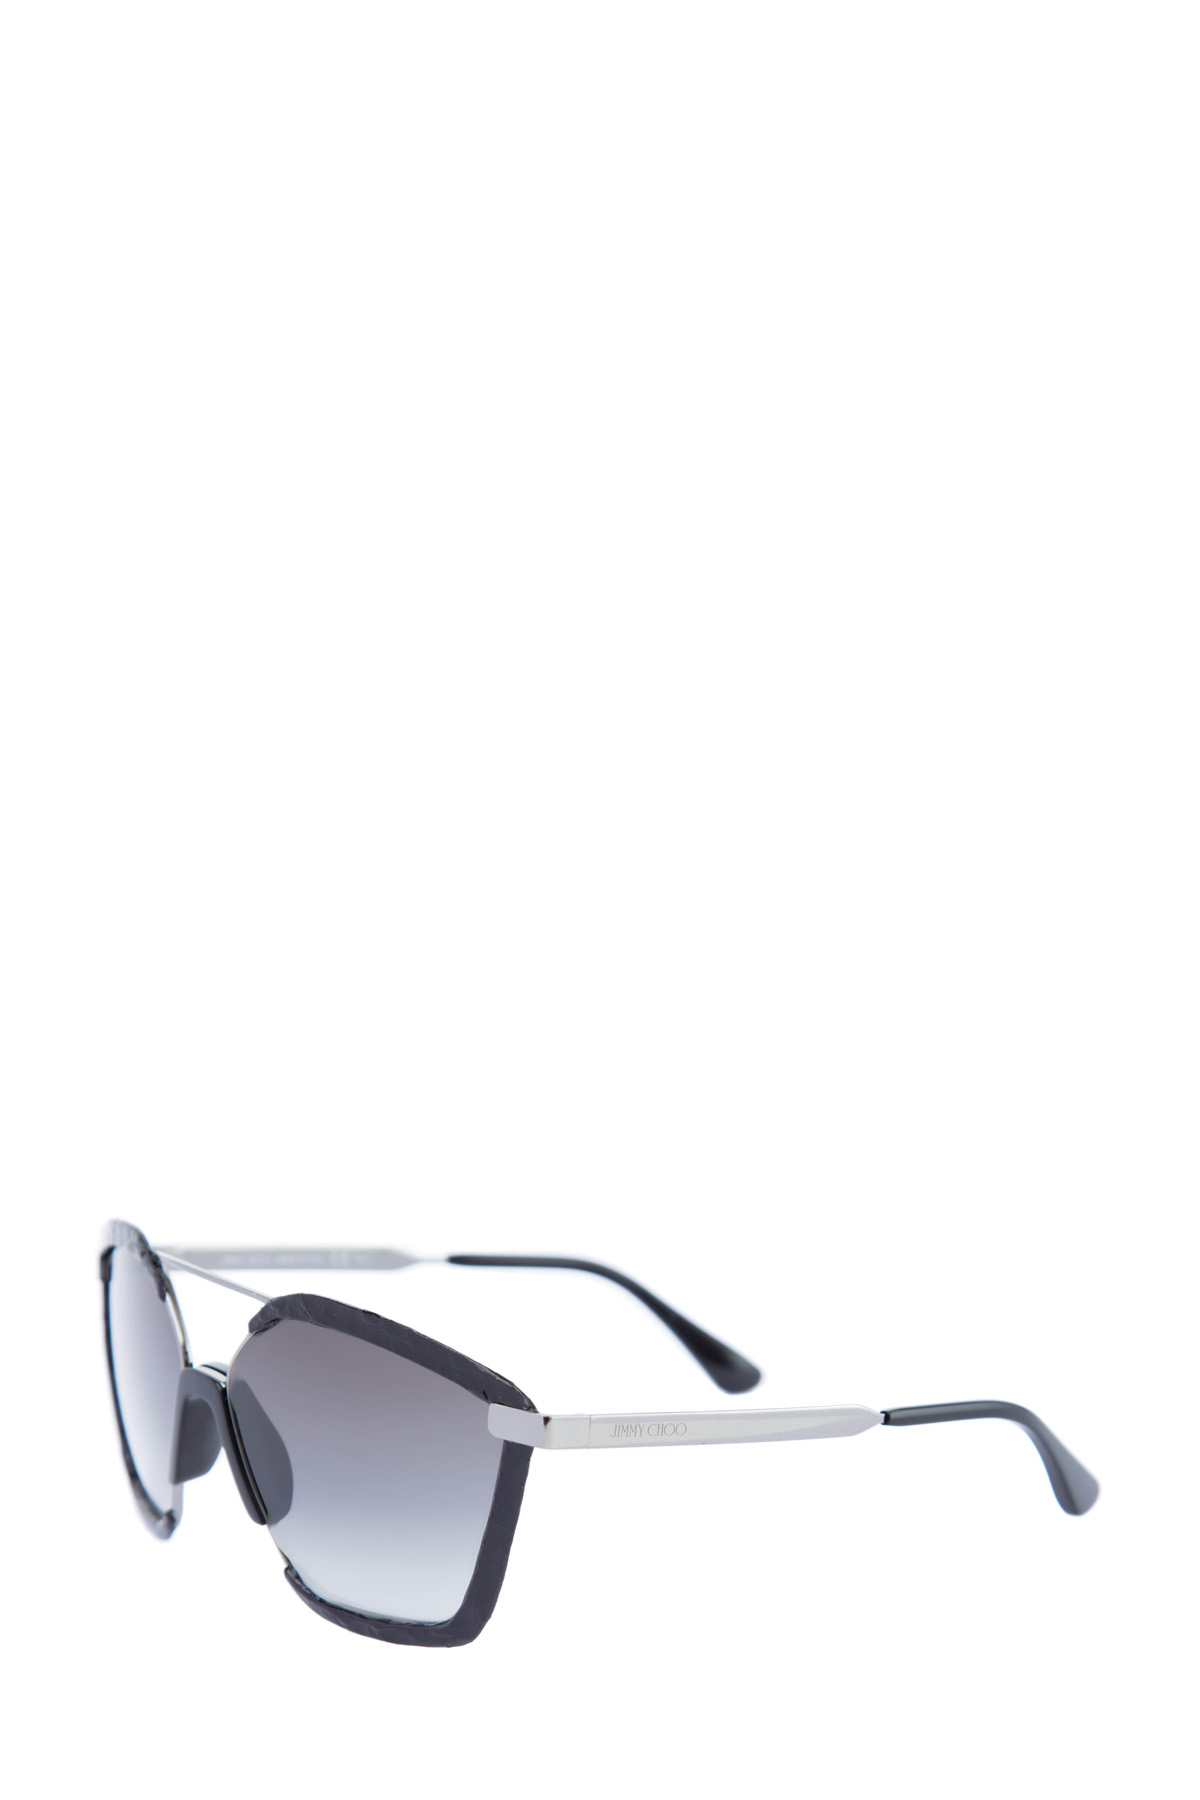 Очки Leon в металлической оправе со вставками с отделкой из кожи змеи JIMMY CHOO  (sunglasses), размер 44 - фото 3